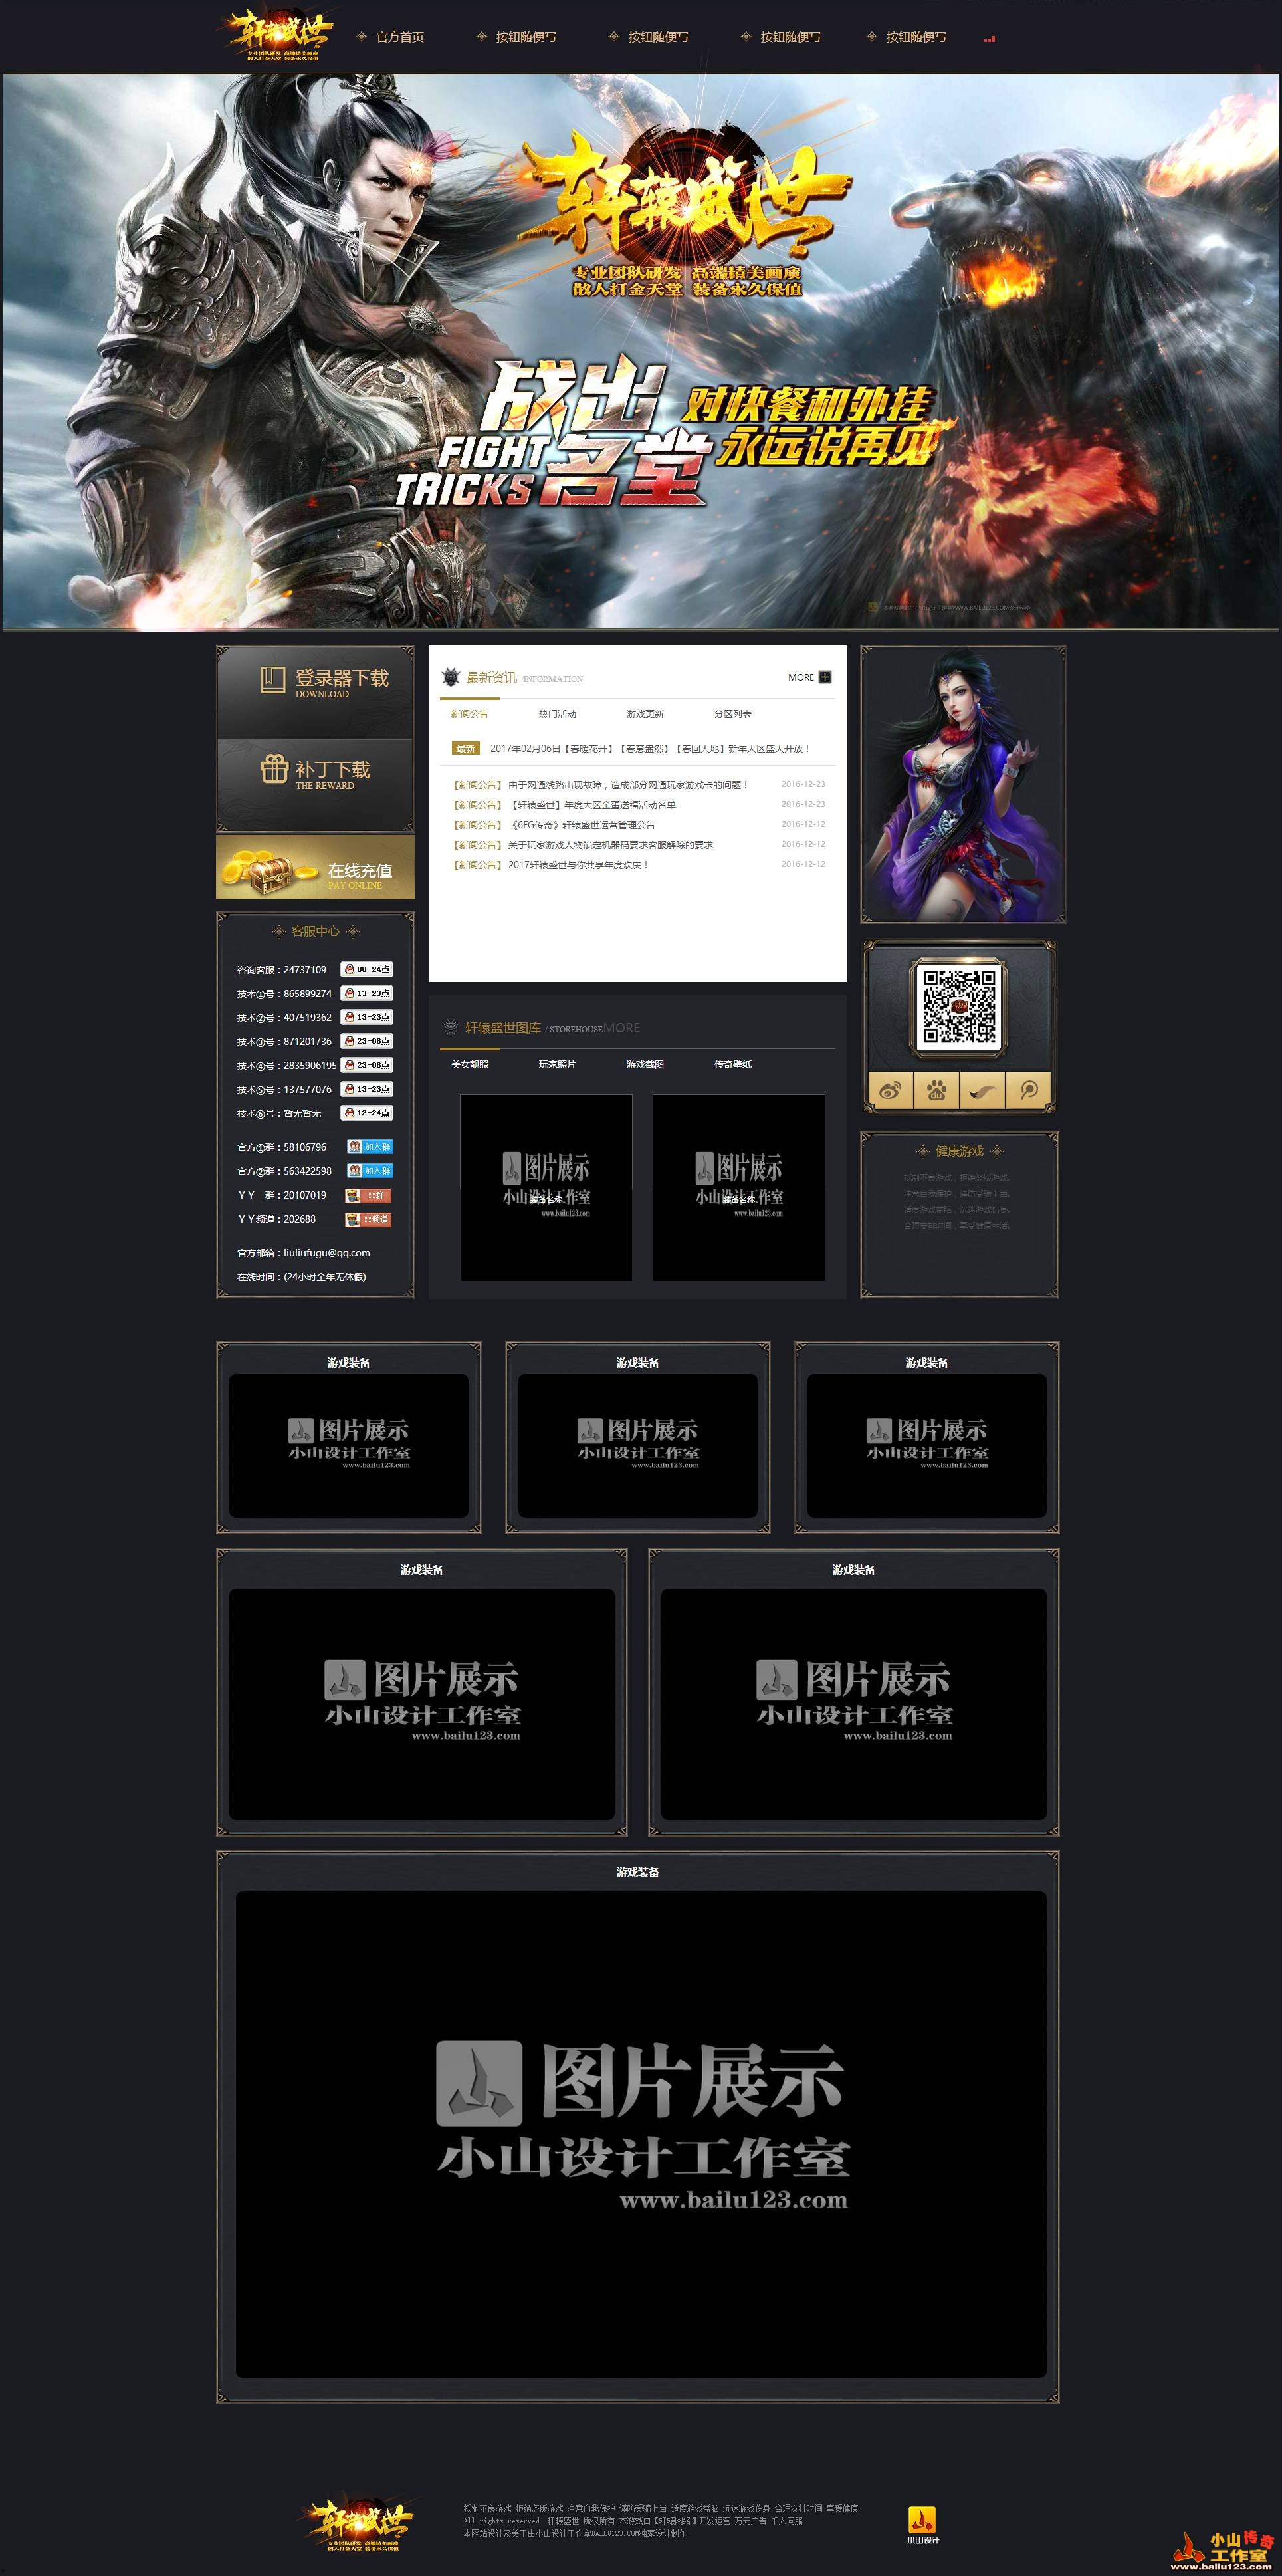 2017年2月发布网站设计案例-轩辕盛世合击网站模板